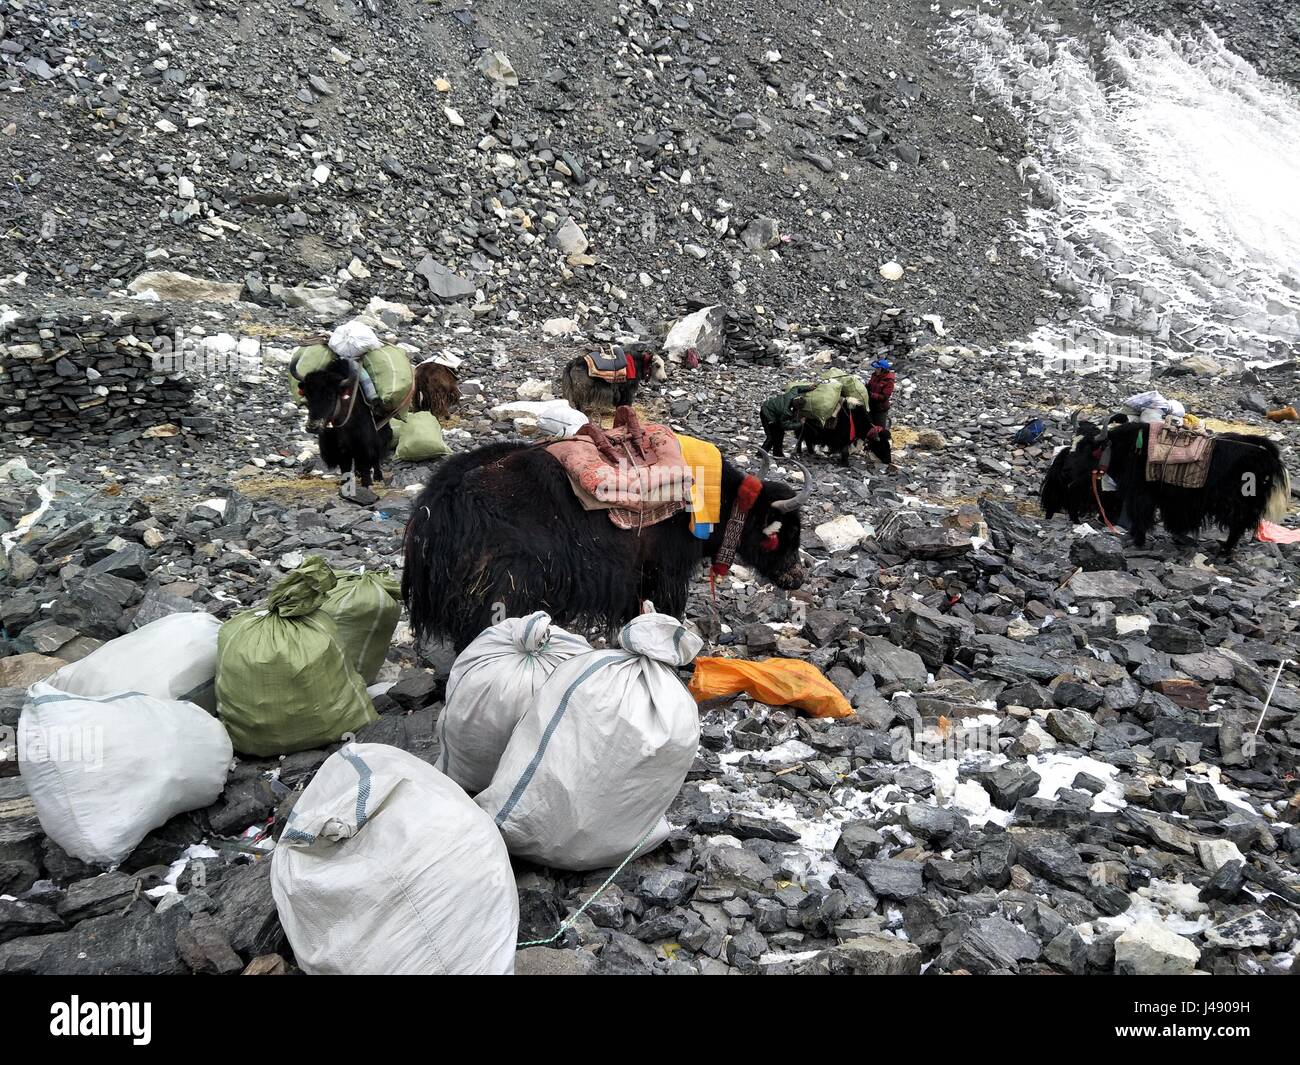 Lhassa. 8 mai, 2017. Les gens recueillir des déchets dans le versant nord du Mont Qomolangma dans le sud-ouest de la Chine, région autonome du Tibet, le 8 mai 2017. Les neuf jours de la campagne de nettoyage a débuté le 6 mai, le ciblage sur les campings à des altitudes comprises entre 5 200 et 6 500 mètres. Les déchets sont principalement constitués de bouteilles d'oxygène, bidons, bouteilles, plastiques, rejeté des tentes et des cordes d'escalade laissés par les alpinistes. Credit : Awang Zhaxi/Xinhua/Alamy Live News Banque D'Images